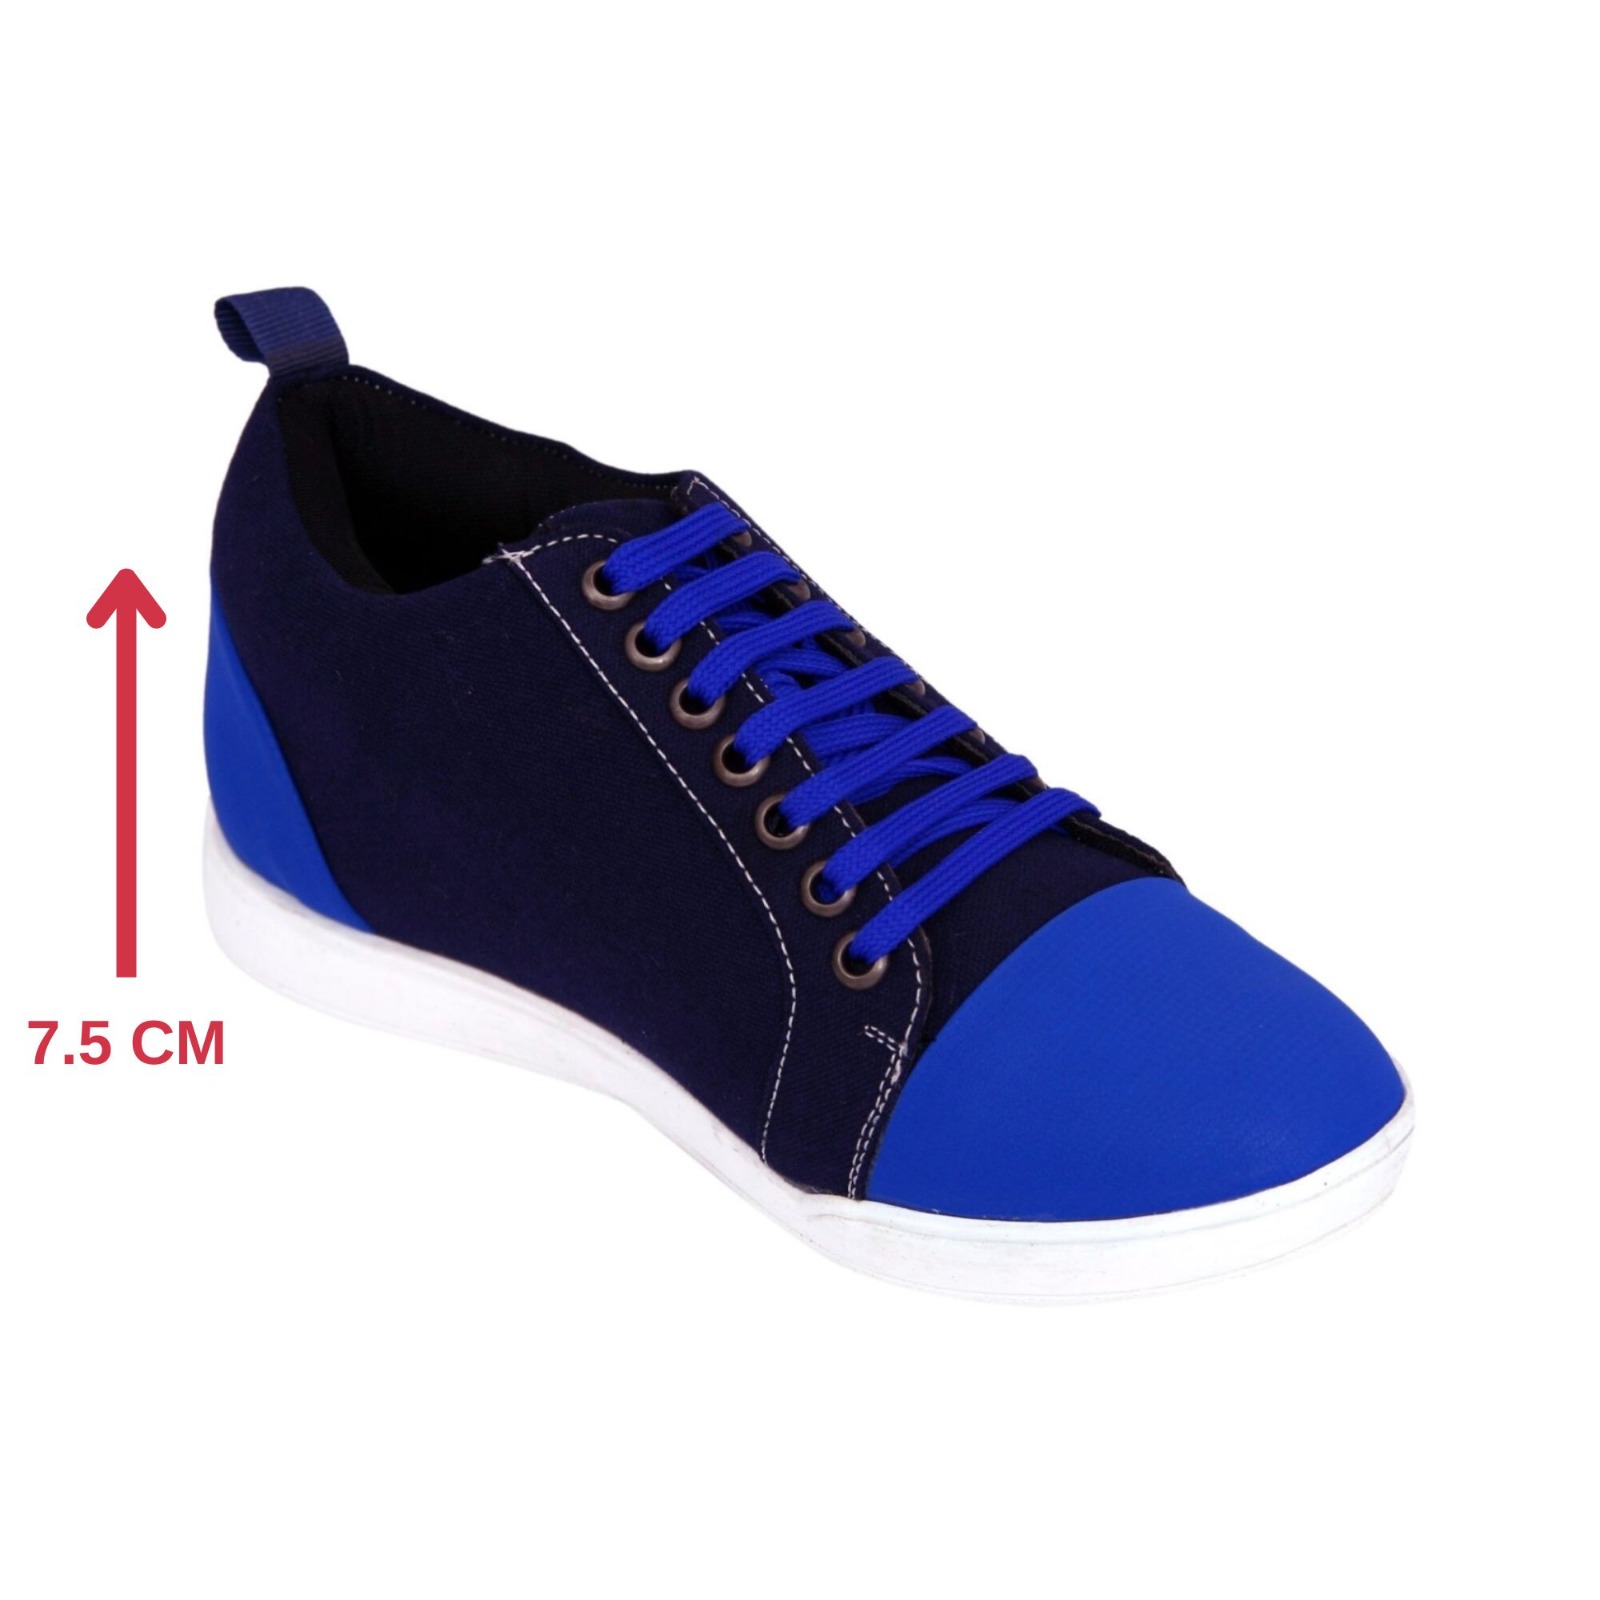 KHADIM Pedro Blue Sneakers Casual Shoe for Boys - 8-13 yrs (5240989)